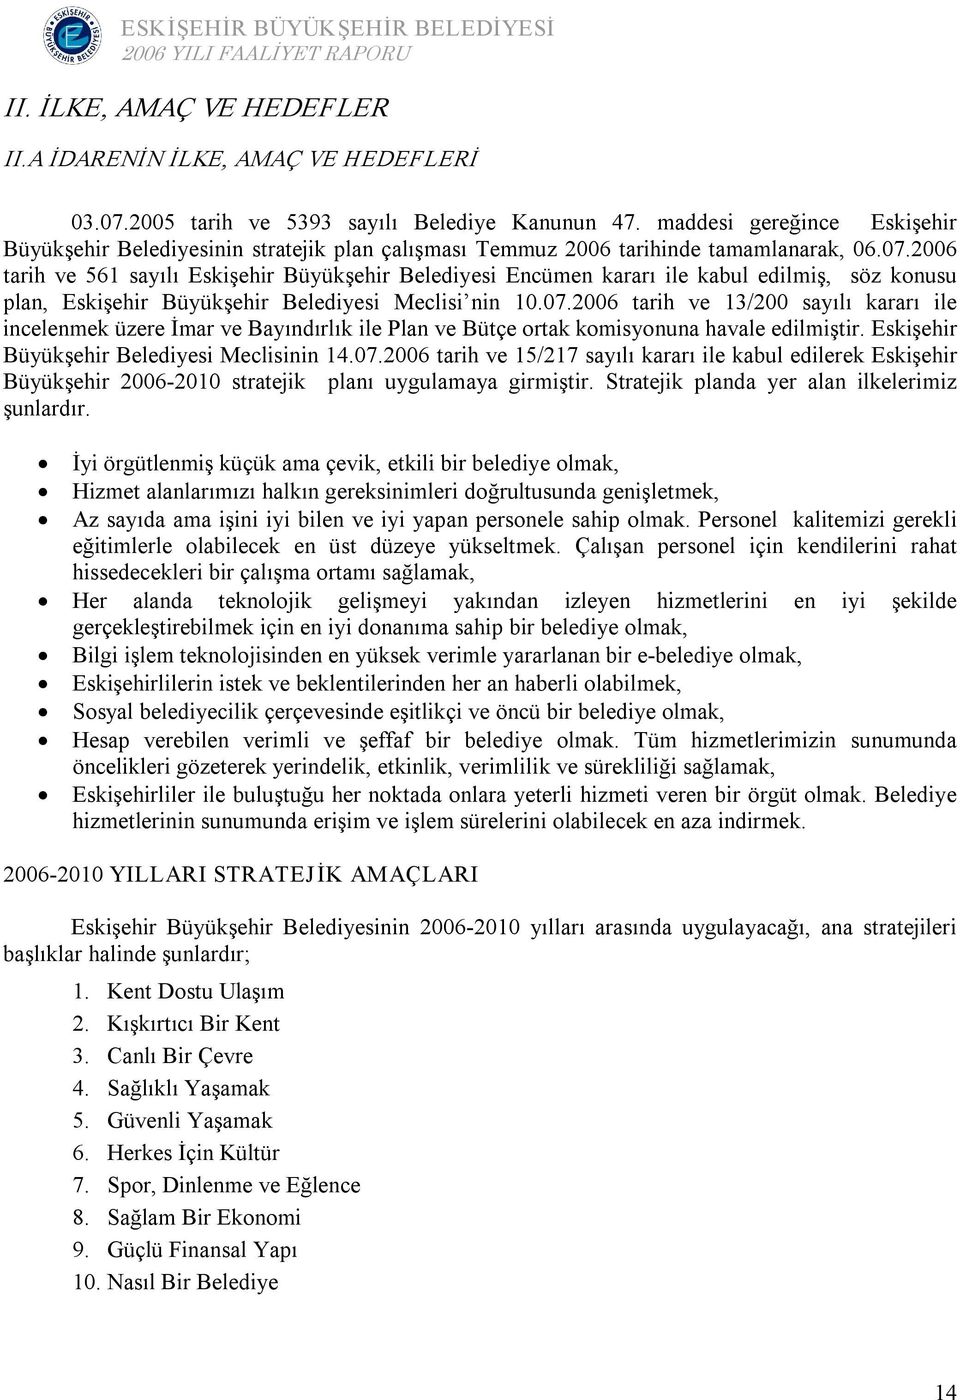 2006 tarih ve 561 sayılı Eskişehir Büyükşehir Belediyesi Encümen kararı ile kabul edilmiş, söz konusu plan, Eskişehir Büyükşehir Belediyesi Meclisi nin 10.07.